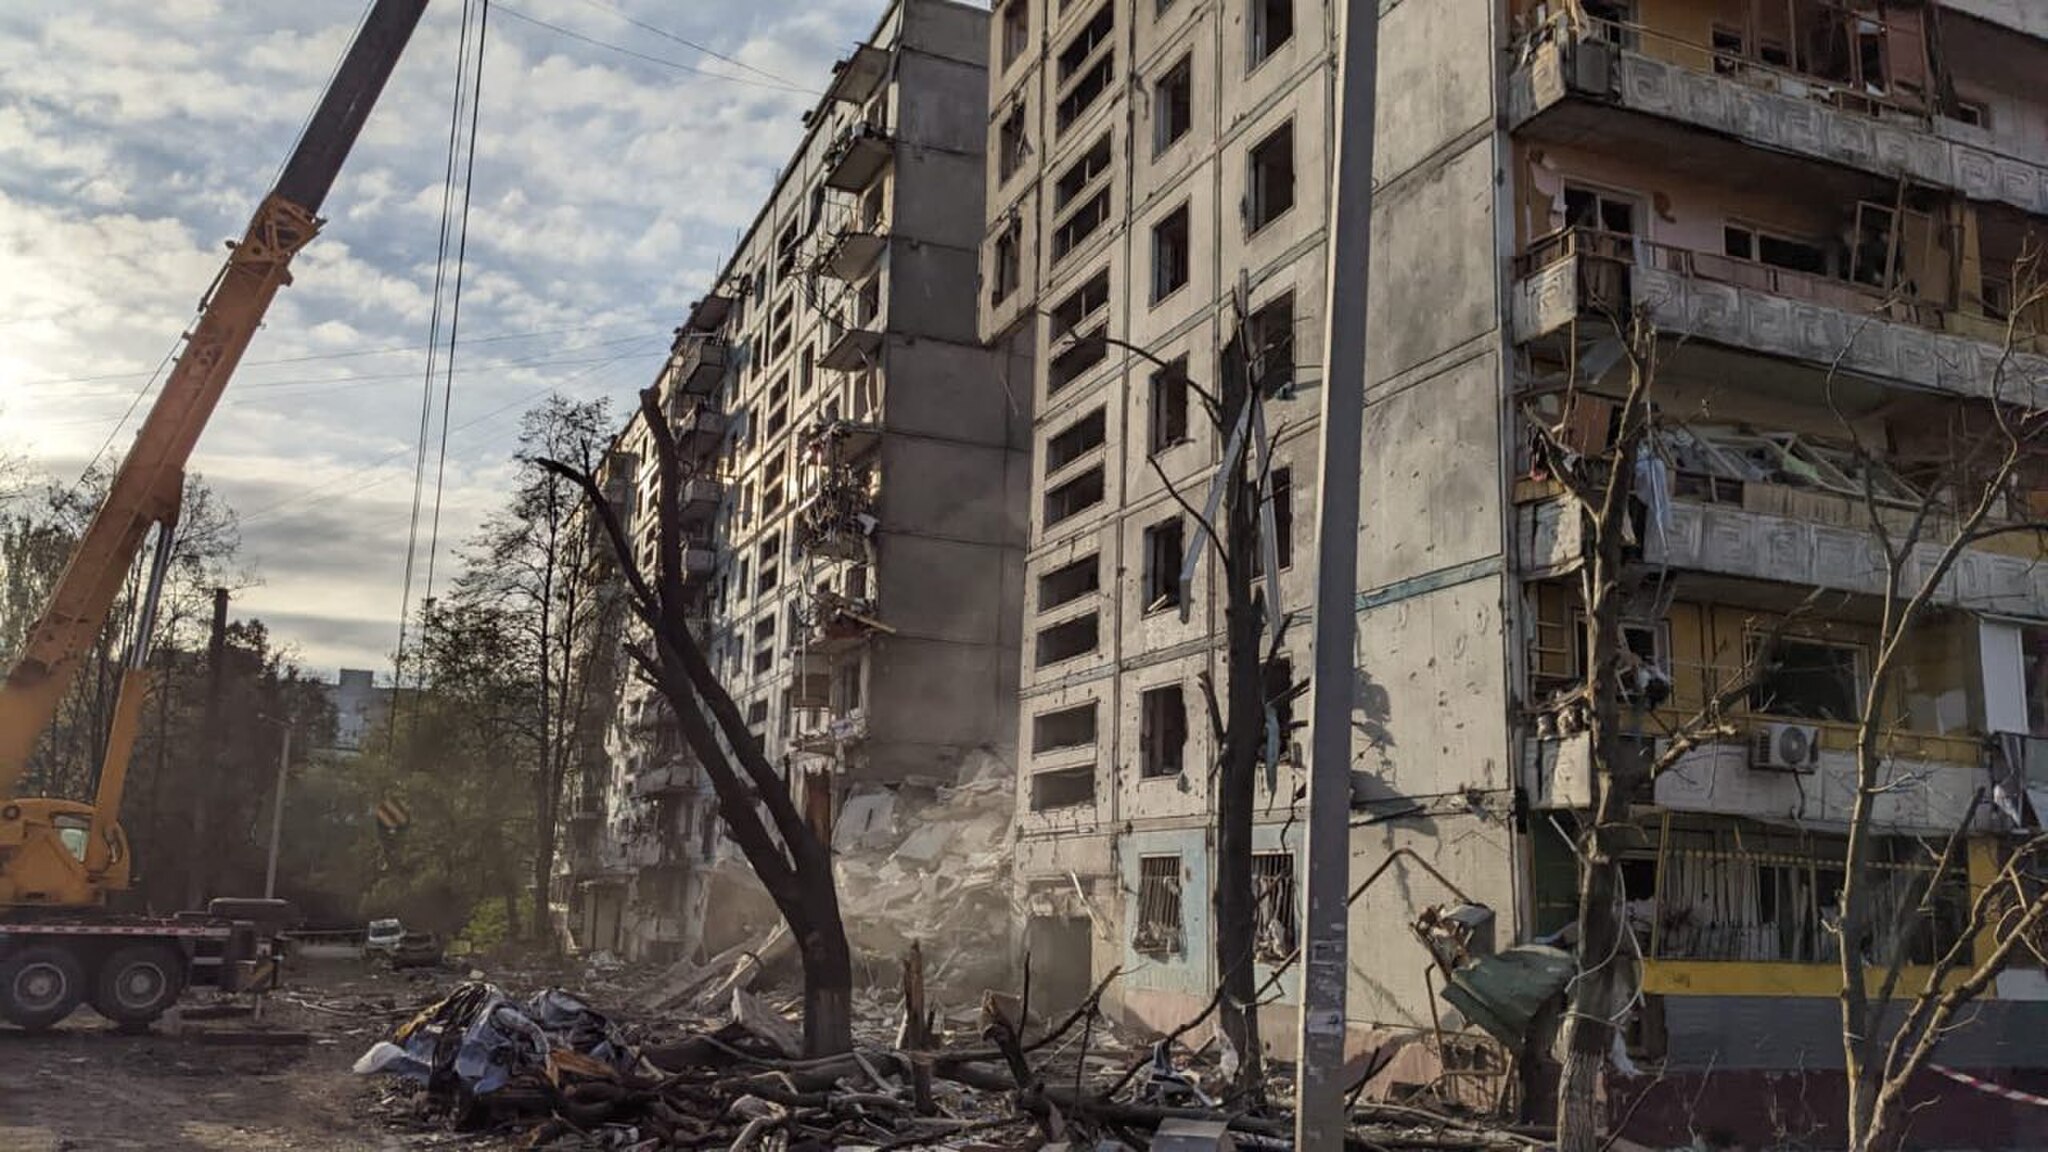 Zoda.gov.ua, Zaporizhzhia after Russian shelling, 2022-10-09 (21), CC BY 4.0, via Wikimedia Commons (Bildgröße geändert)